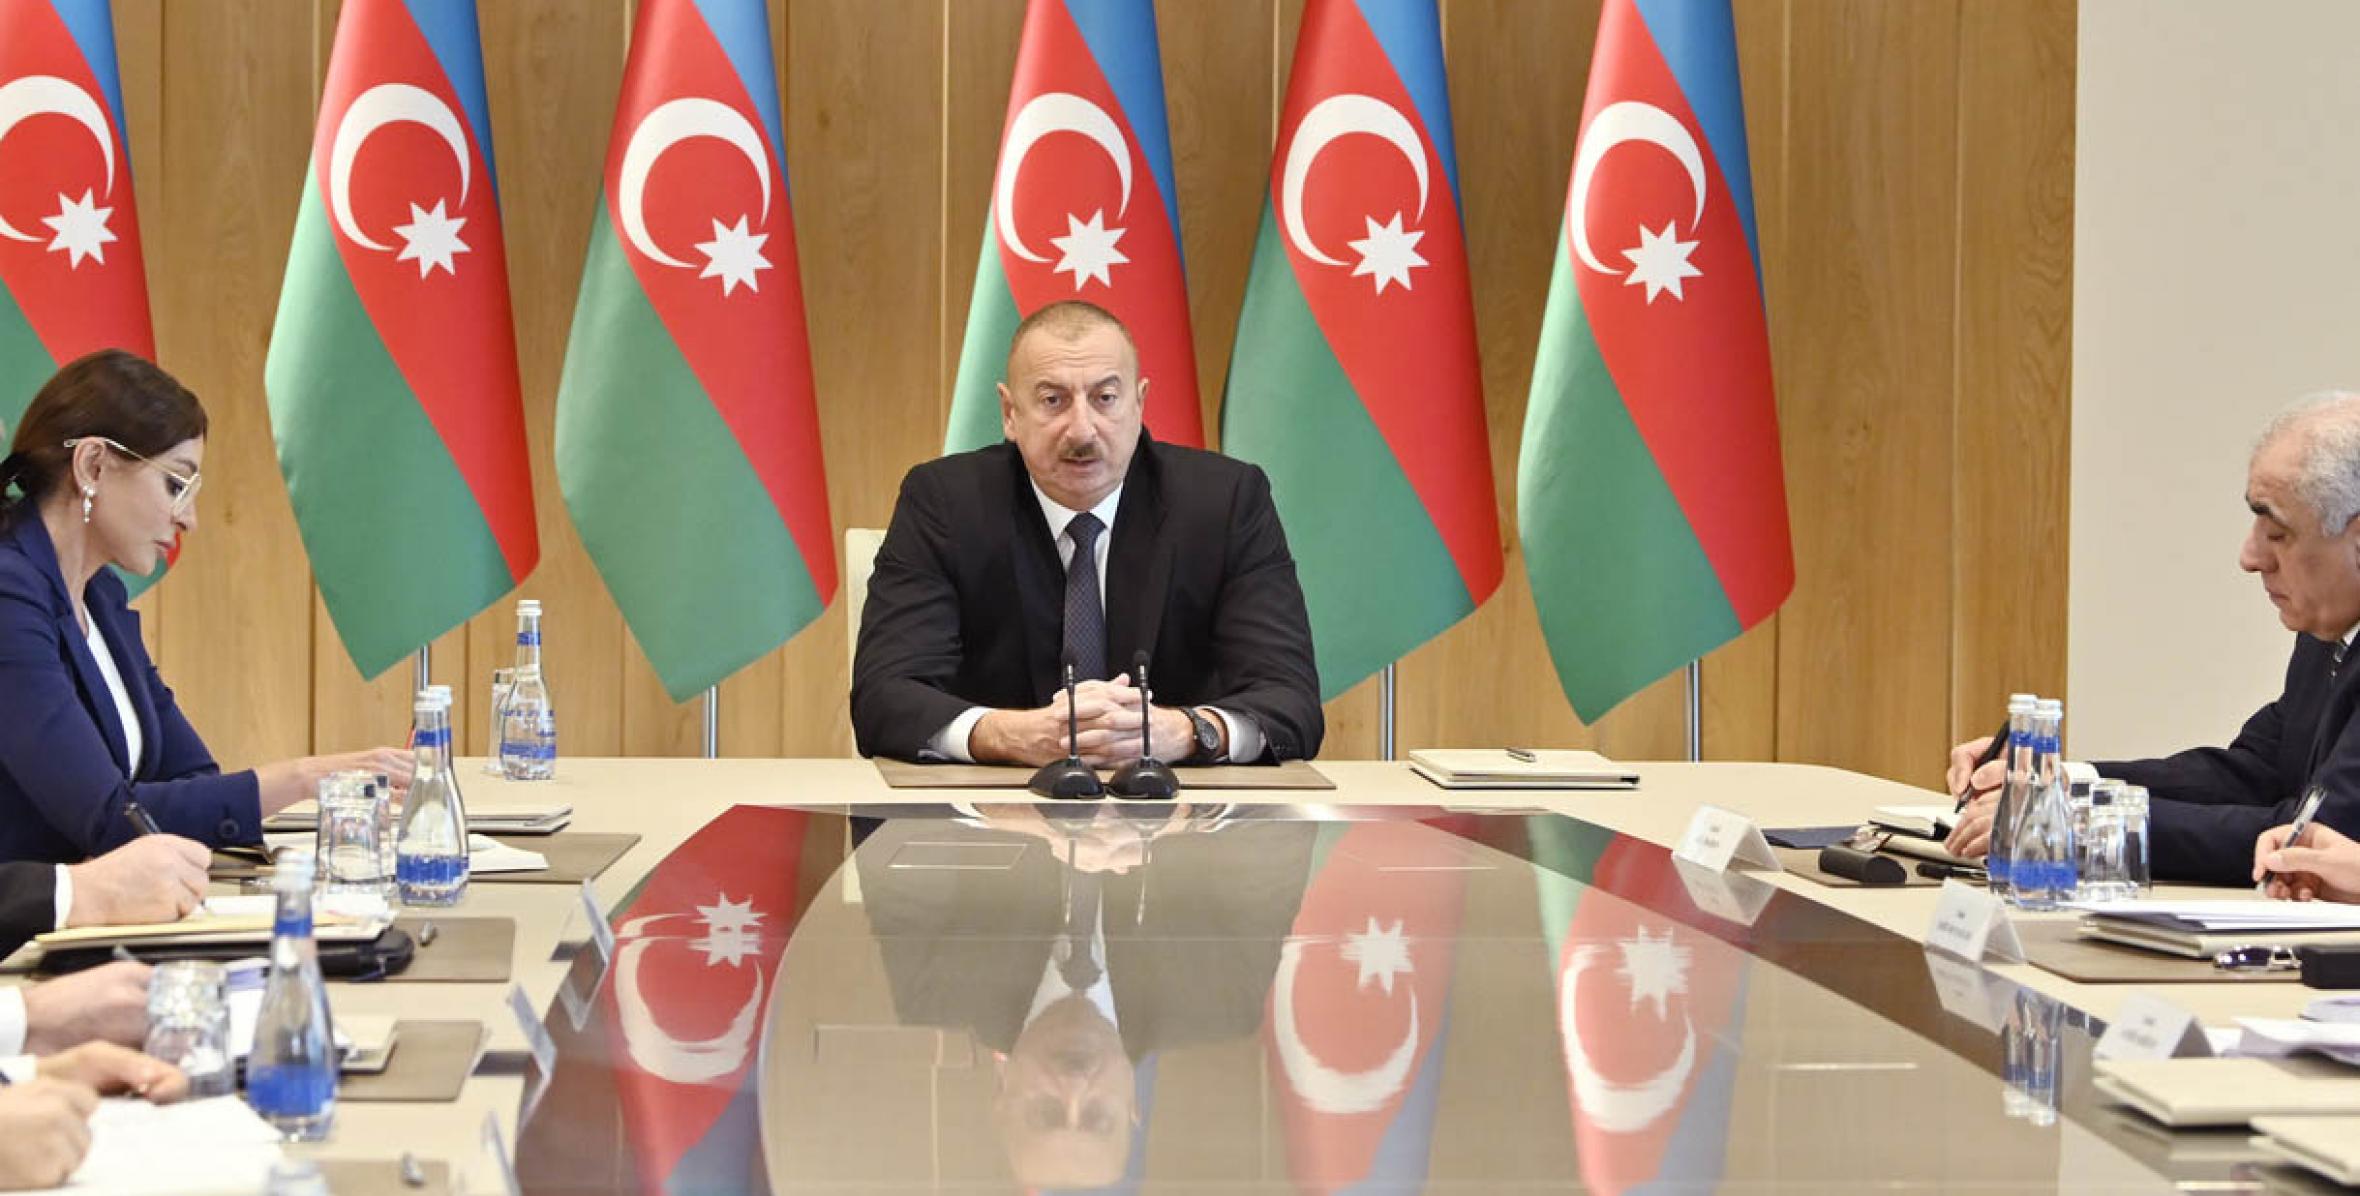 Вступительная речь Ильхама Алиева на совещание, посвященное итогам 2019 года